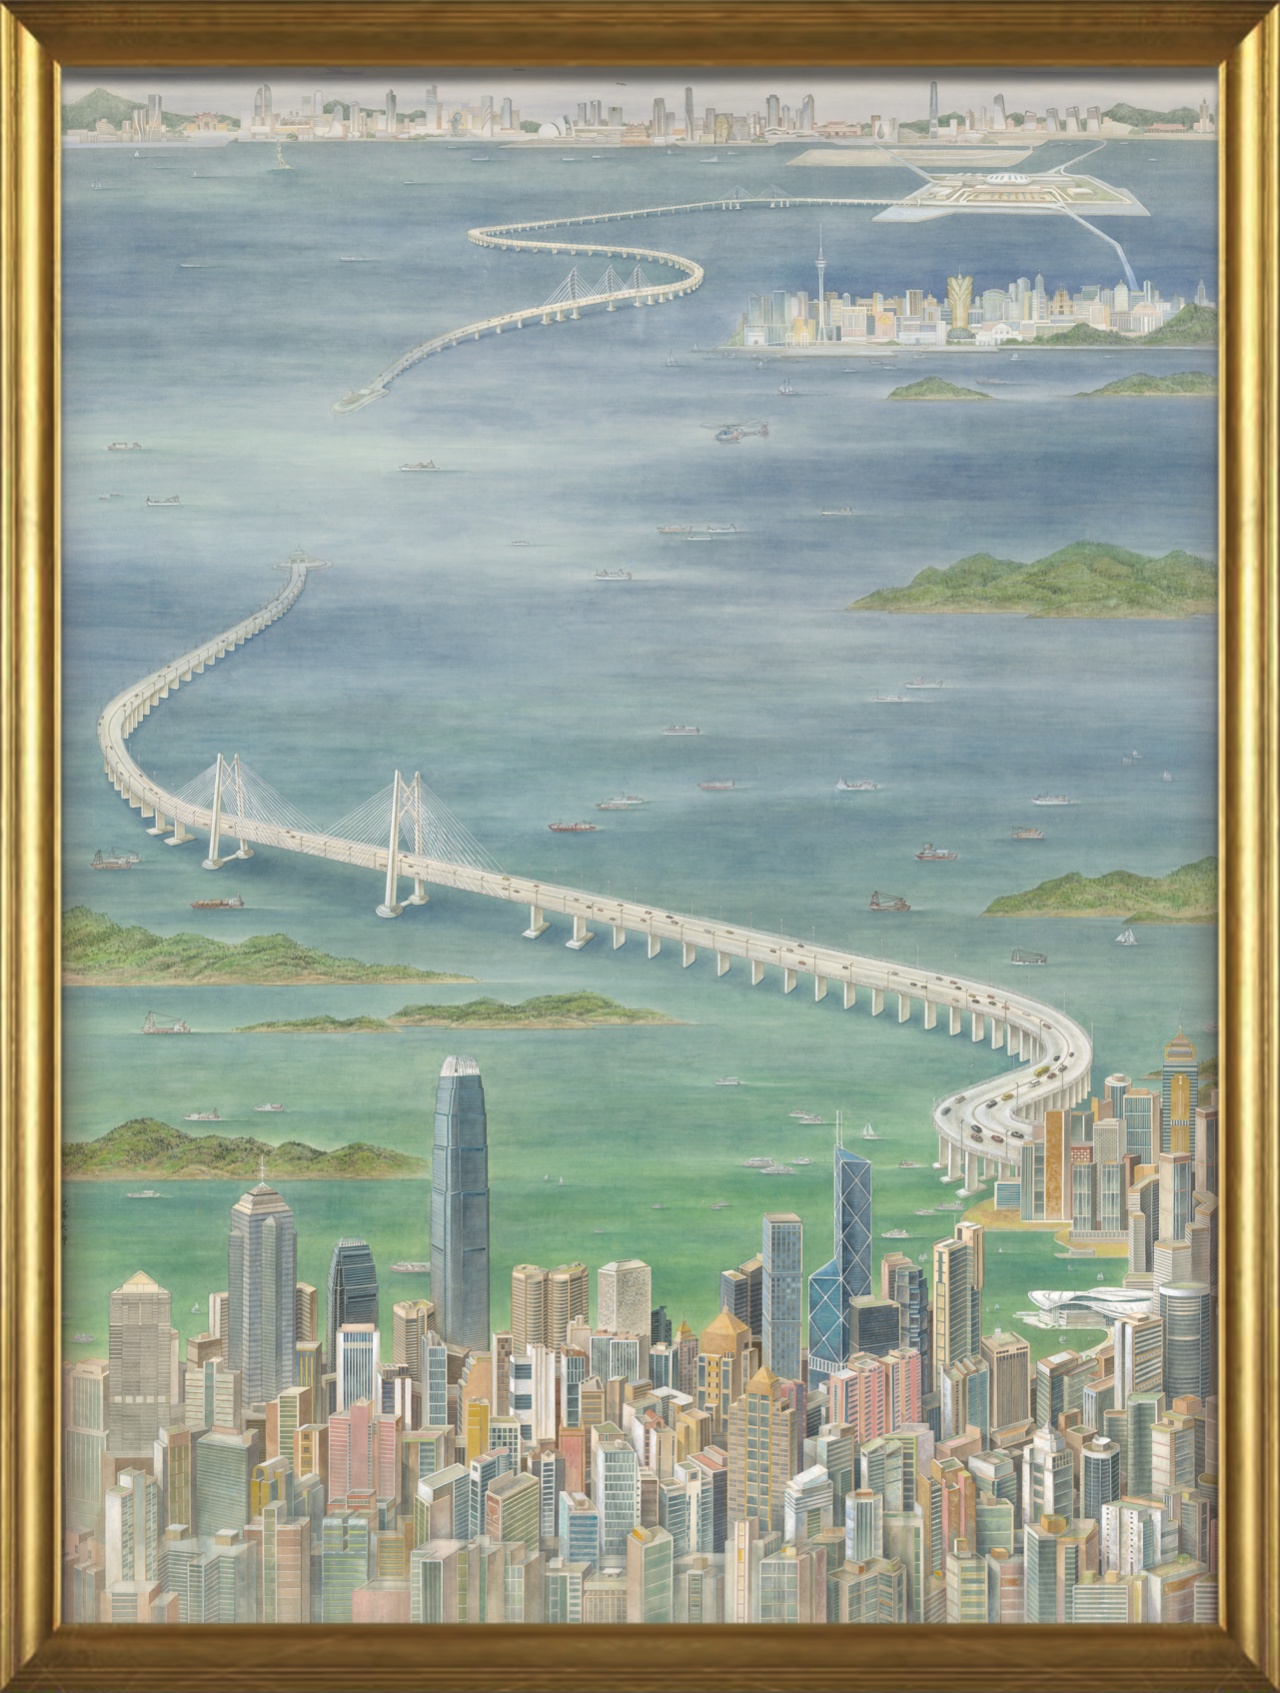 2021年,李翔等三位画家以港珠澳大桥为主题,创作了中国画《龙腾大湾》